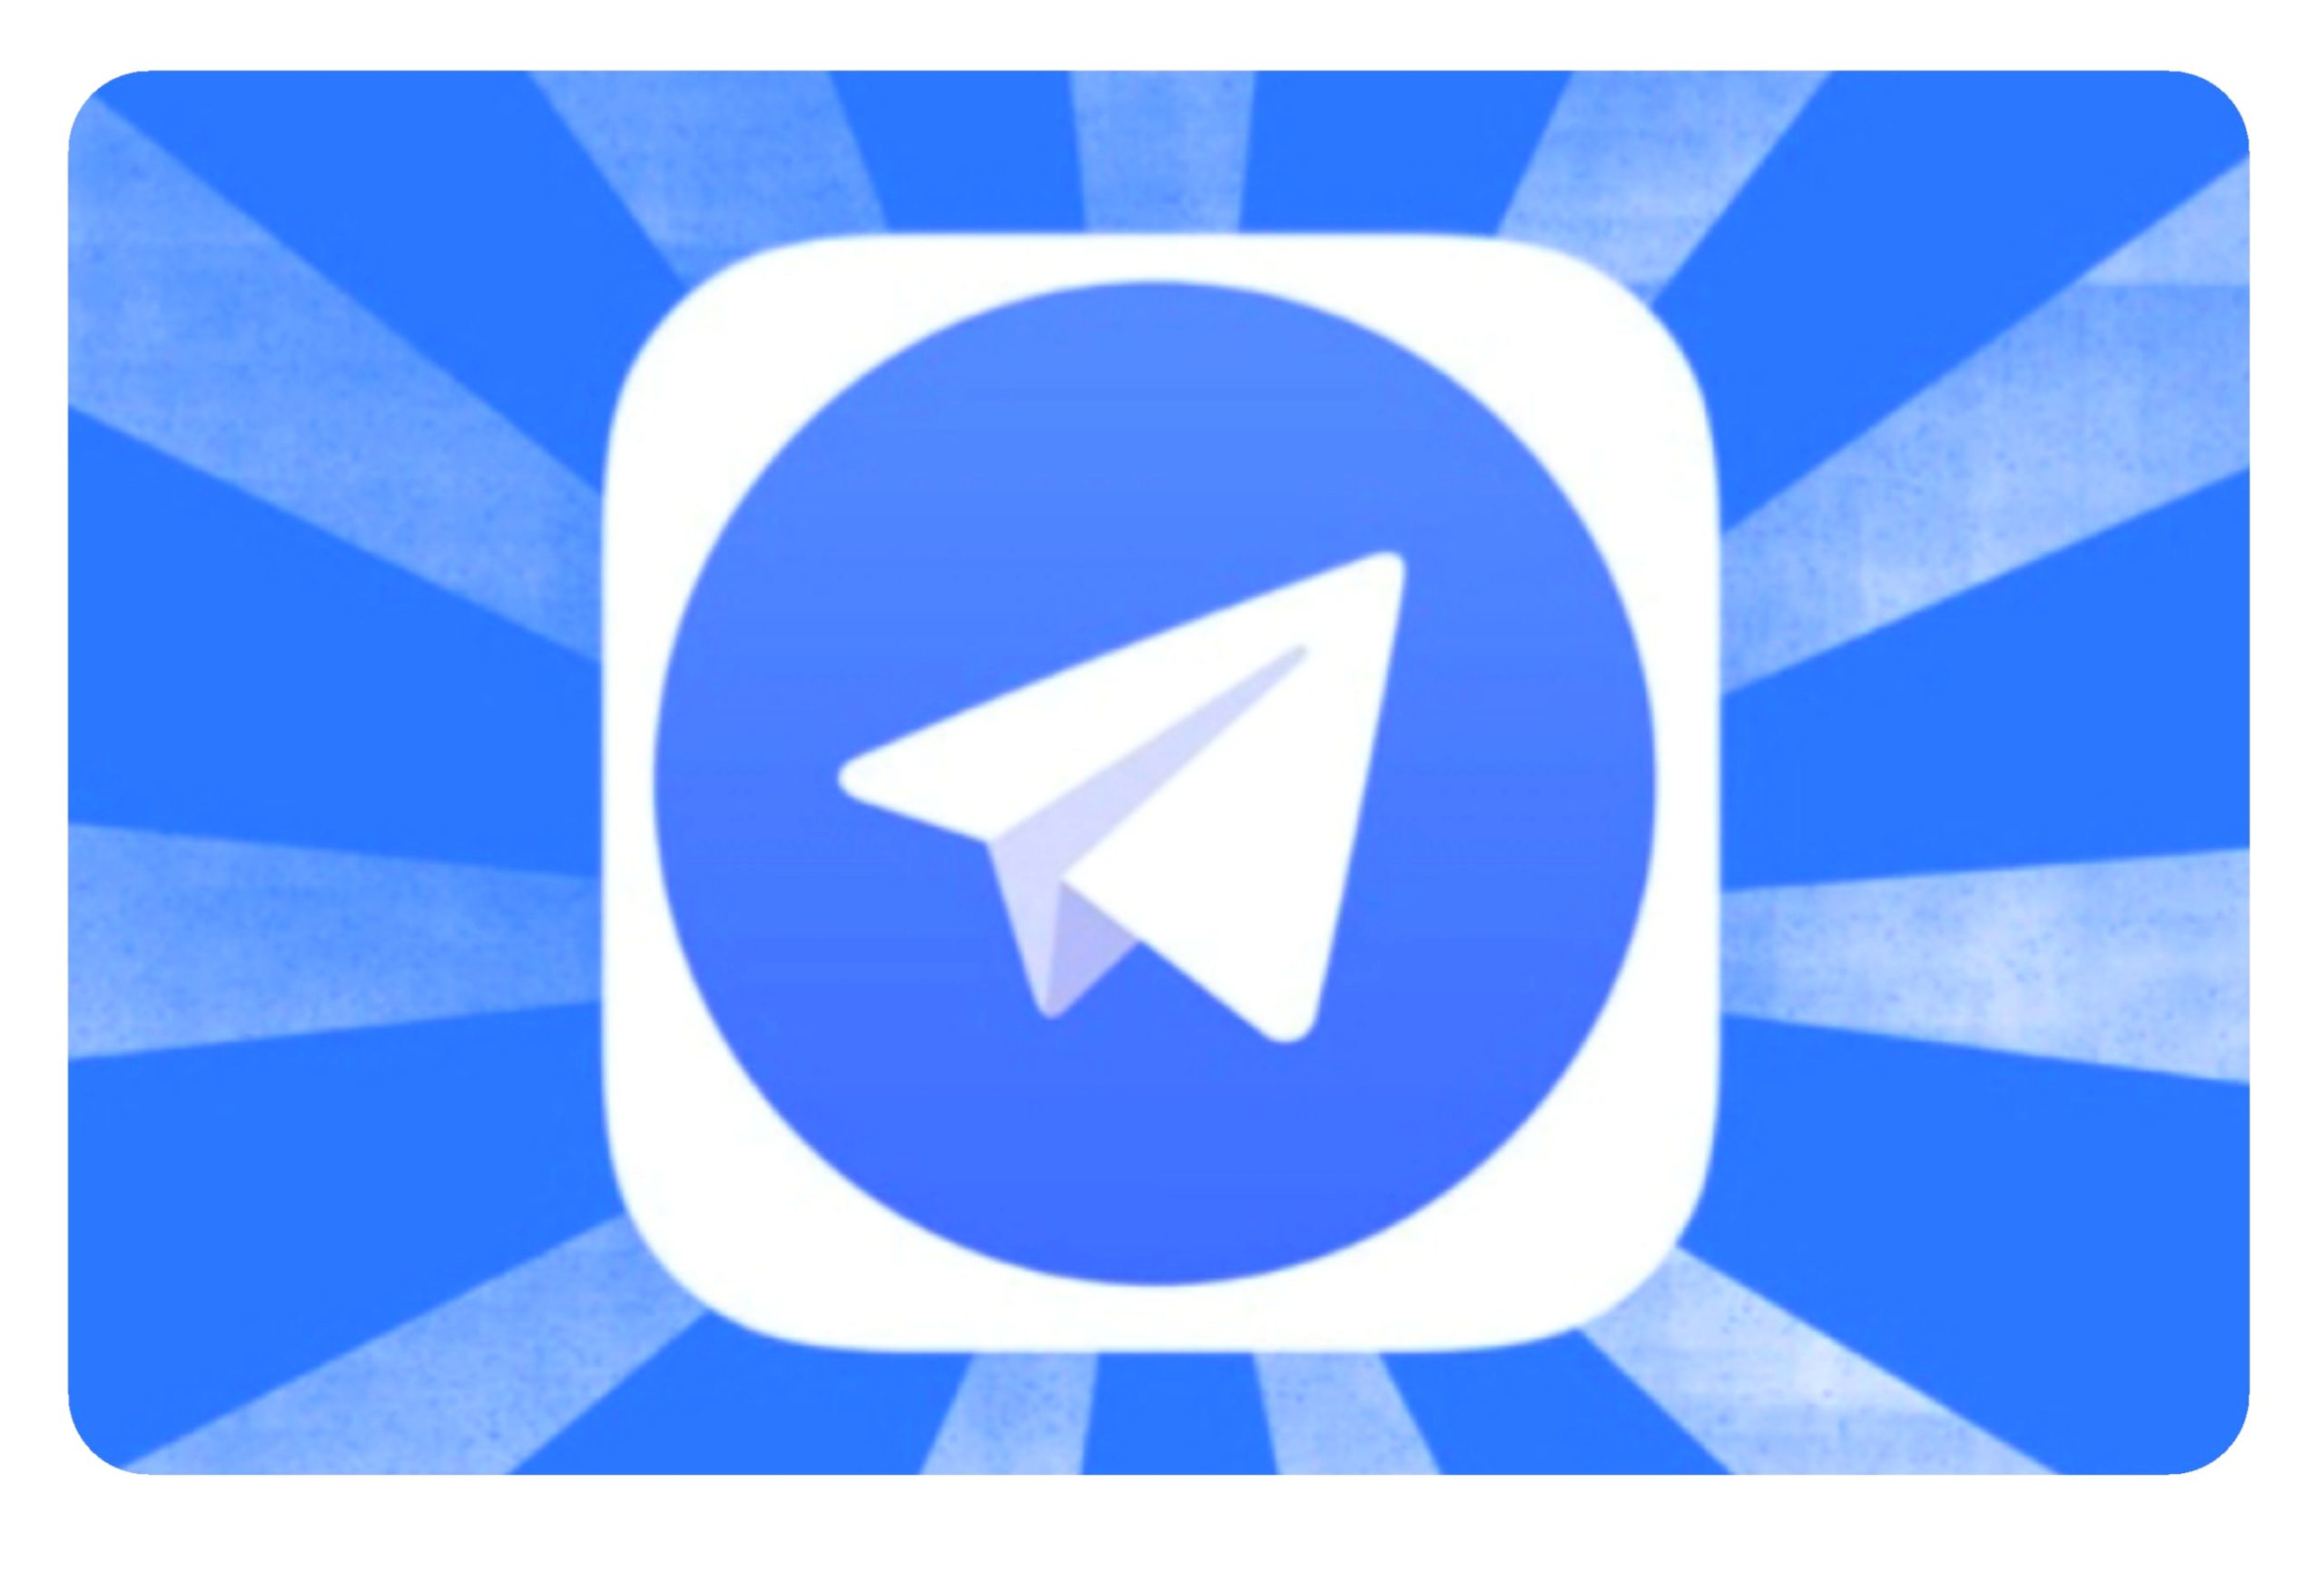 به چت کریپتویی در تلگرام بروید!